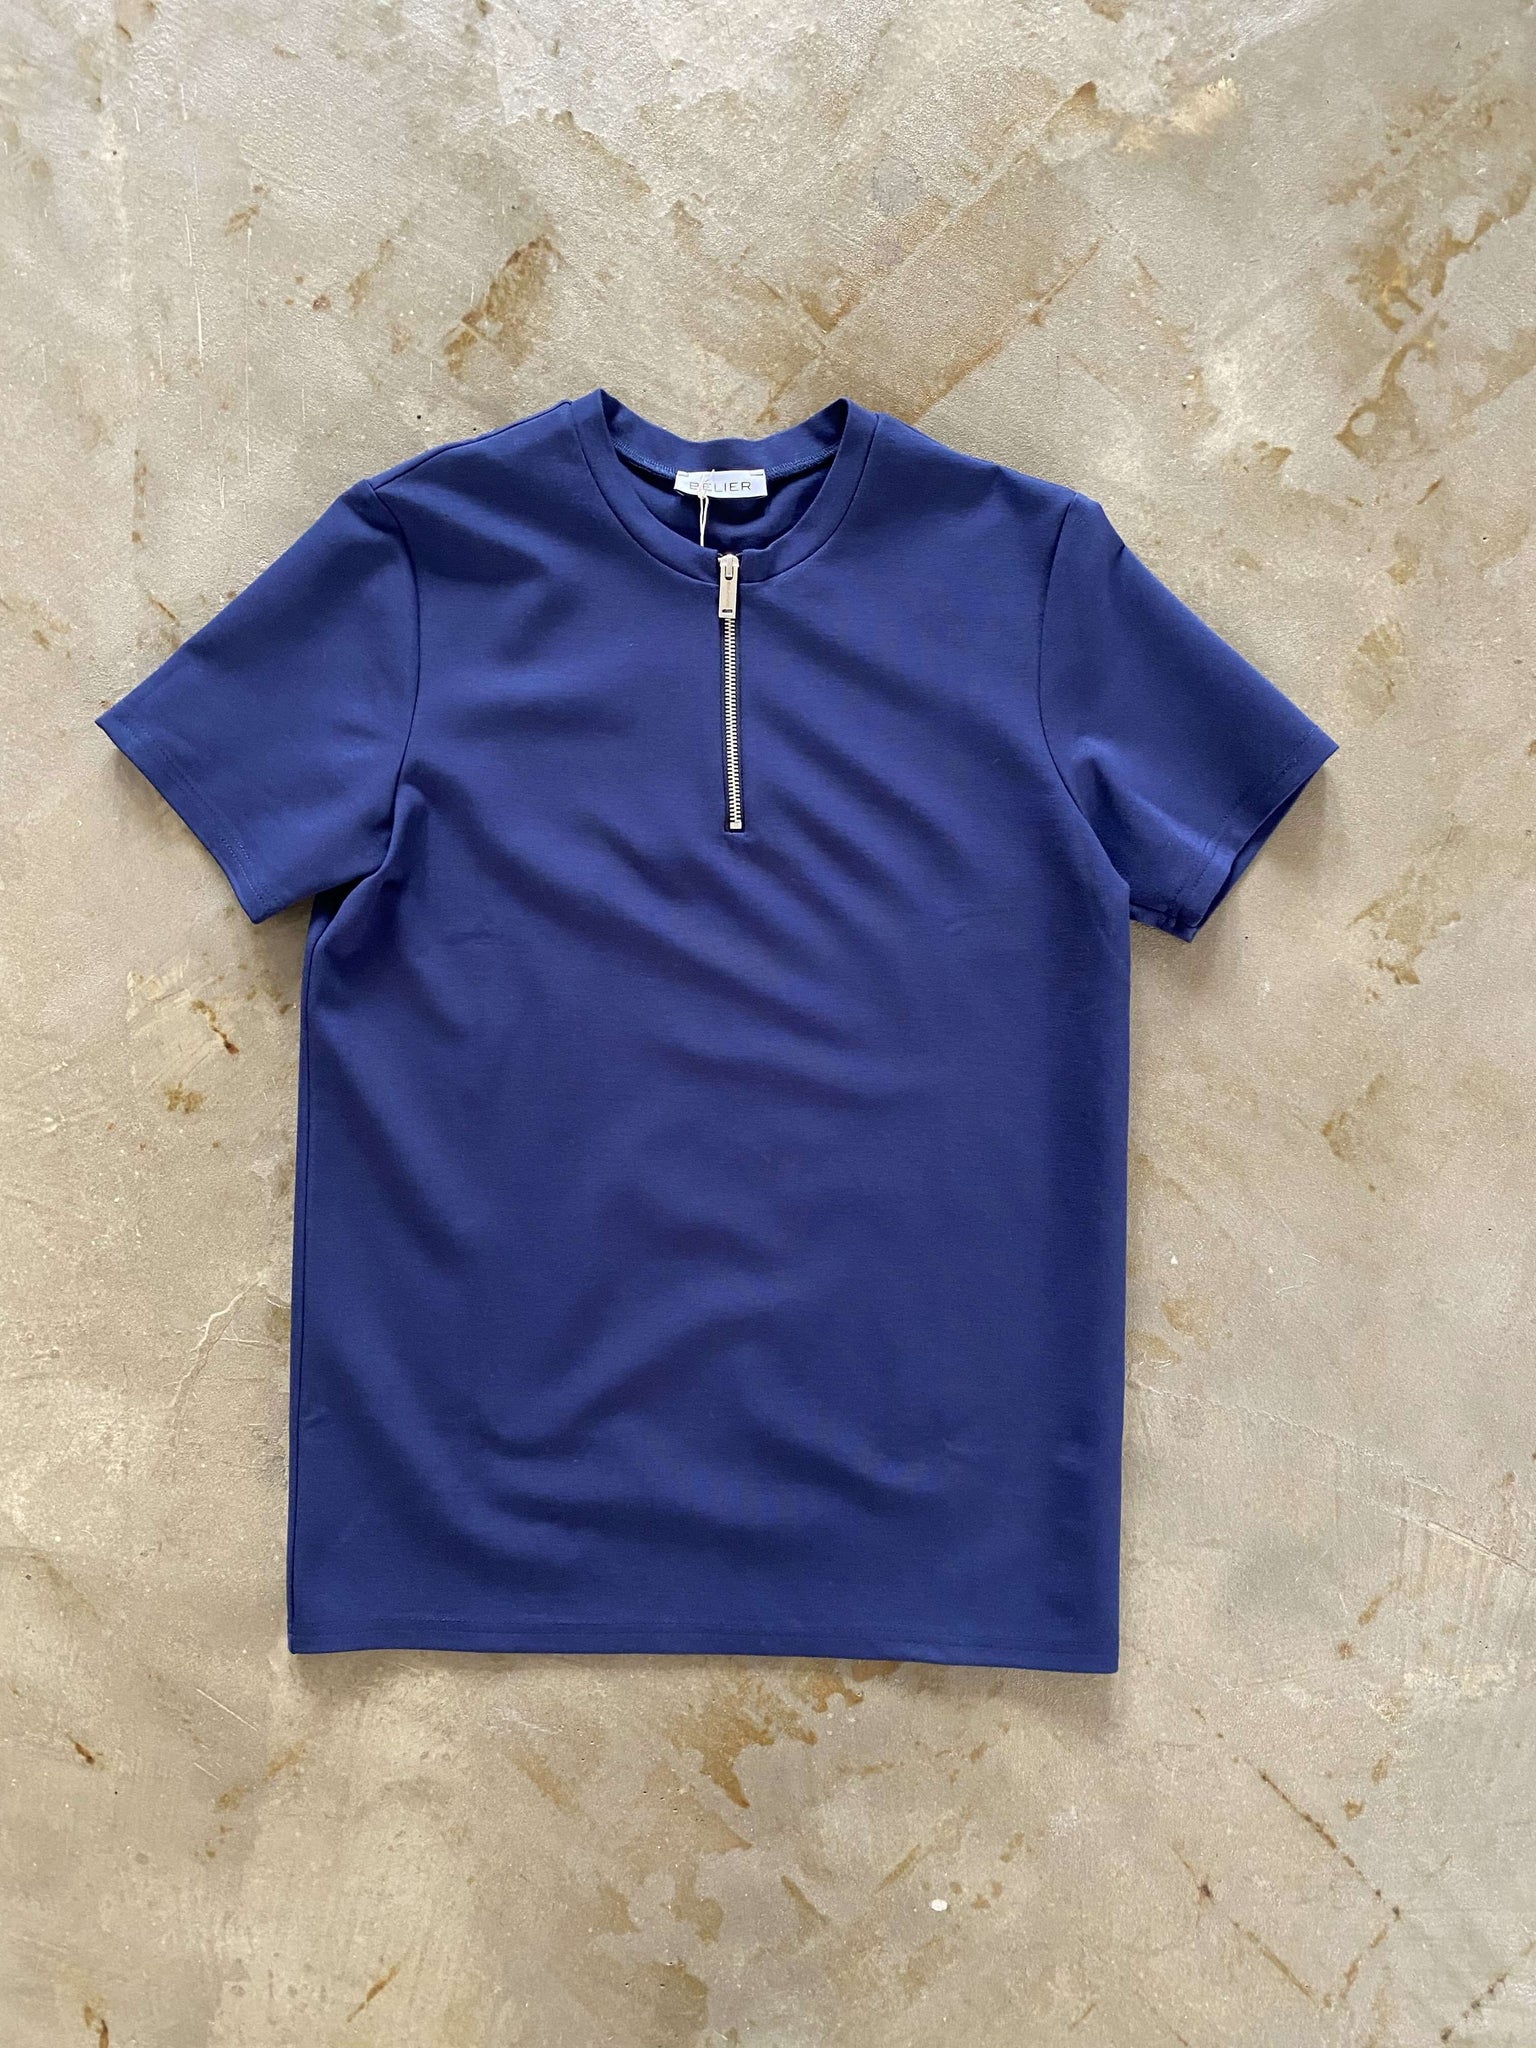 zip t-shirt navy